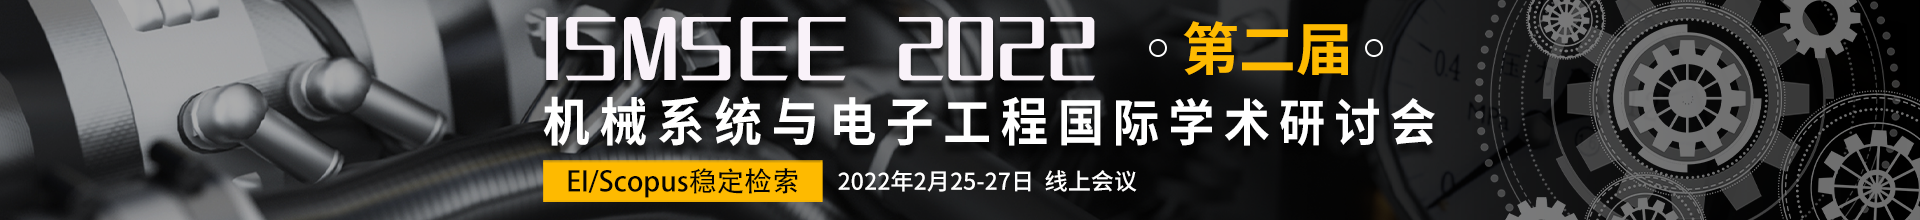 2月-ISMSEE2022-会议云banner-0210.png